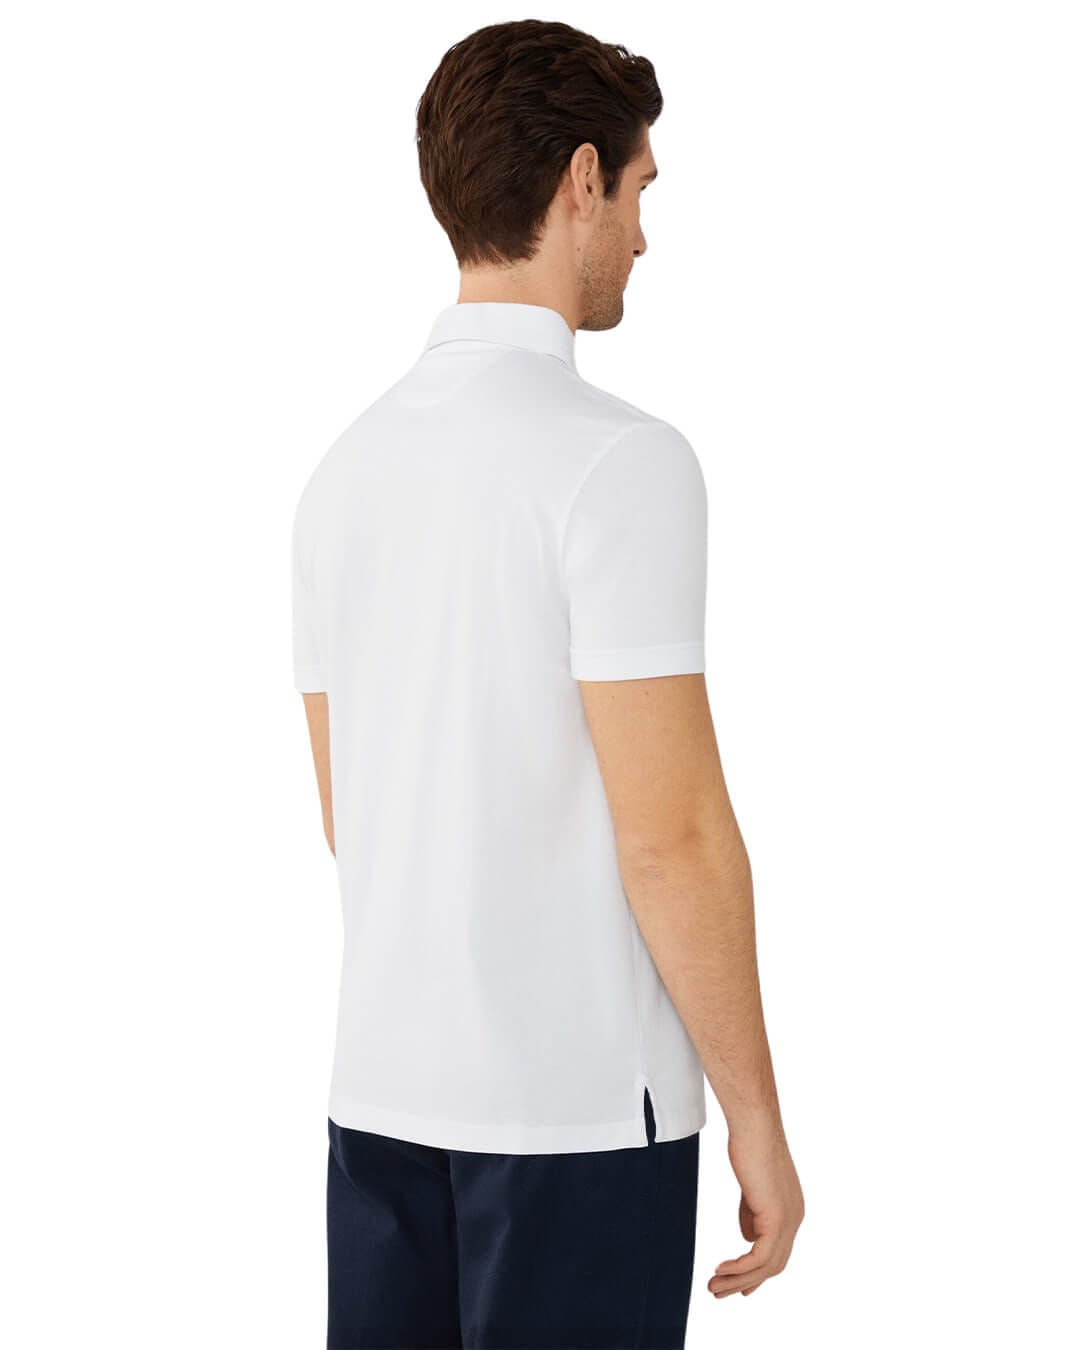 Hackett Polo Shirts Hackett White Pima Cotton Polo Shirt